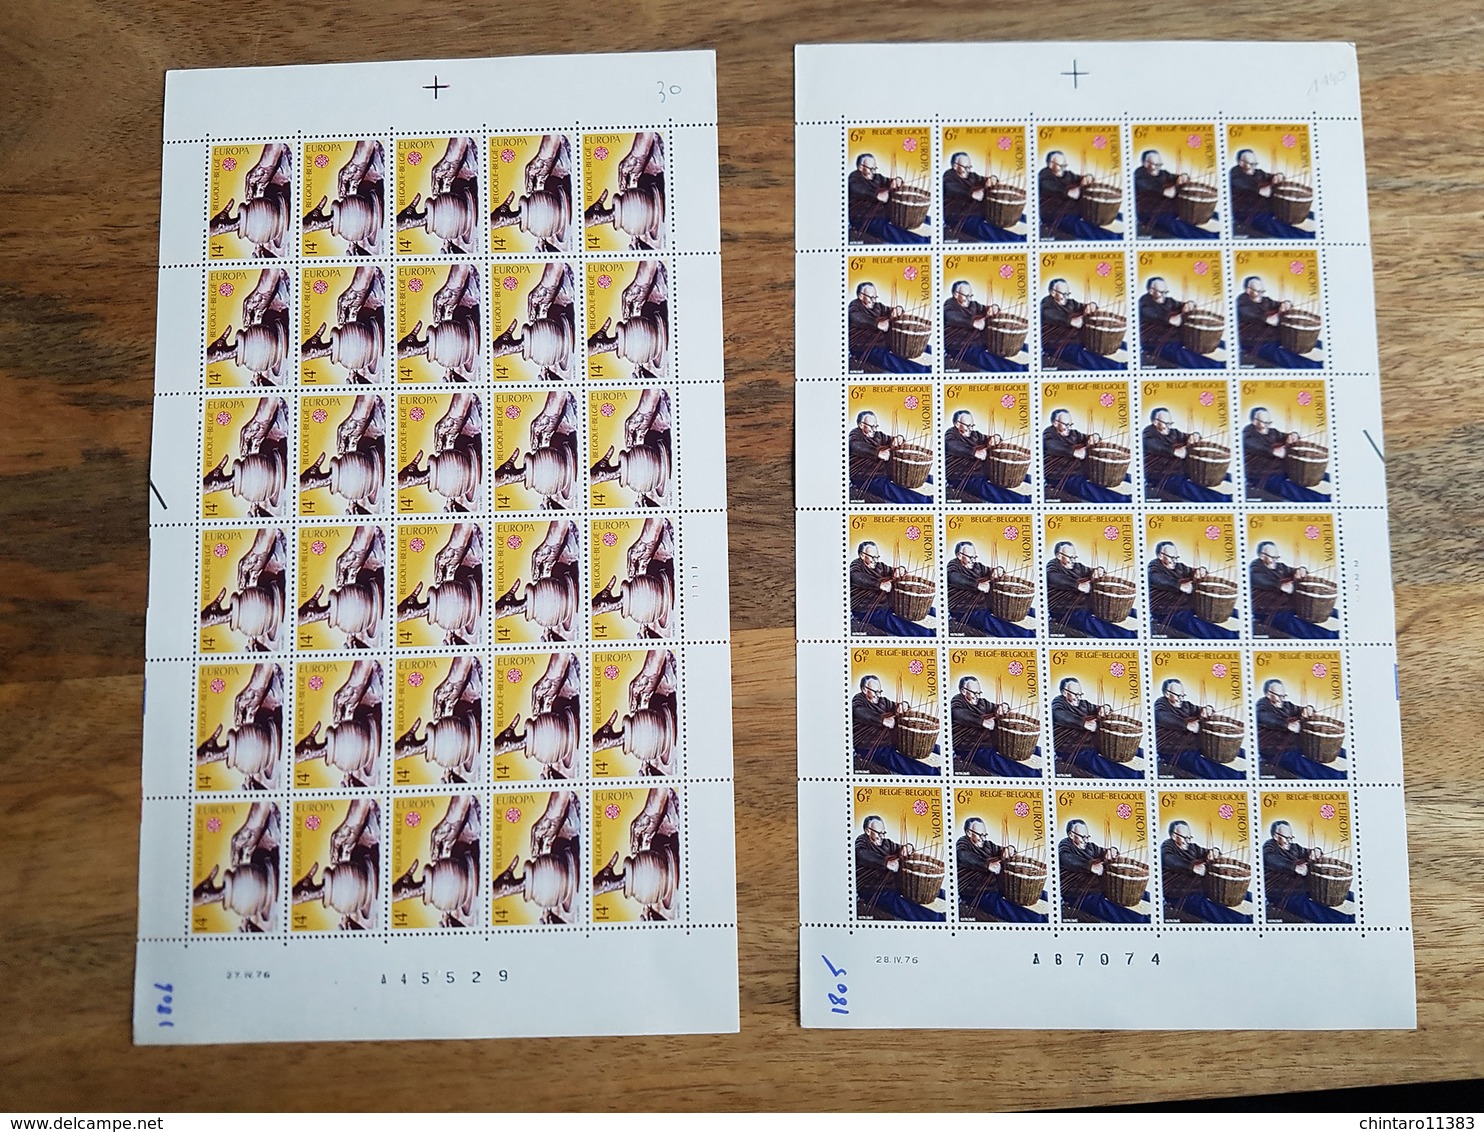 Lot feuilles complètes de timbres Belgique - Année 1976